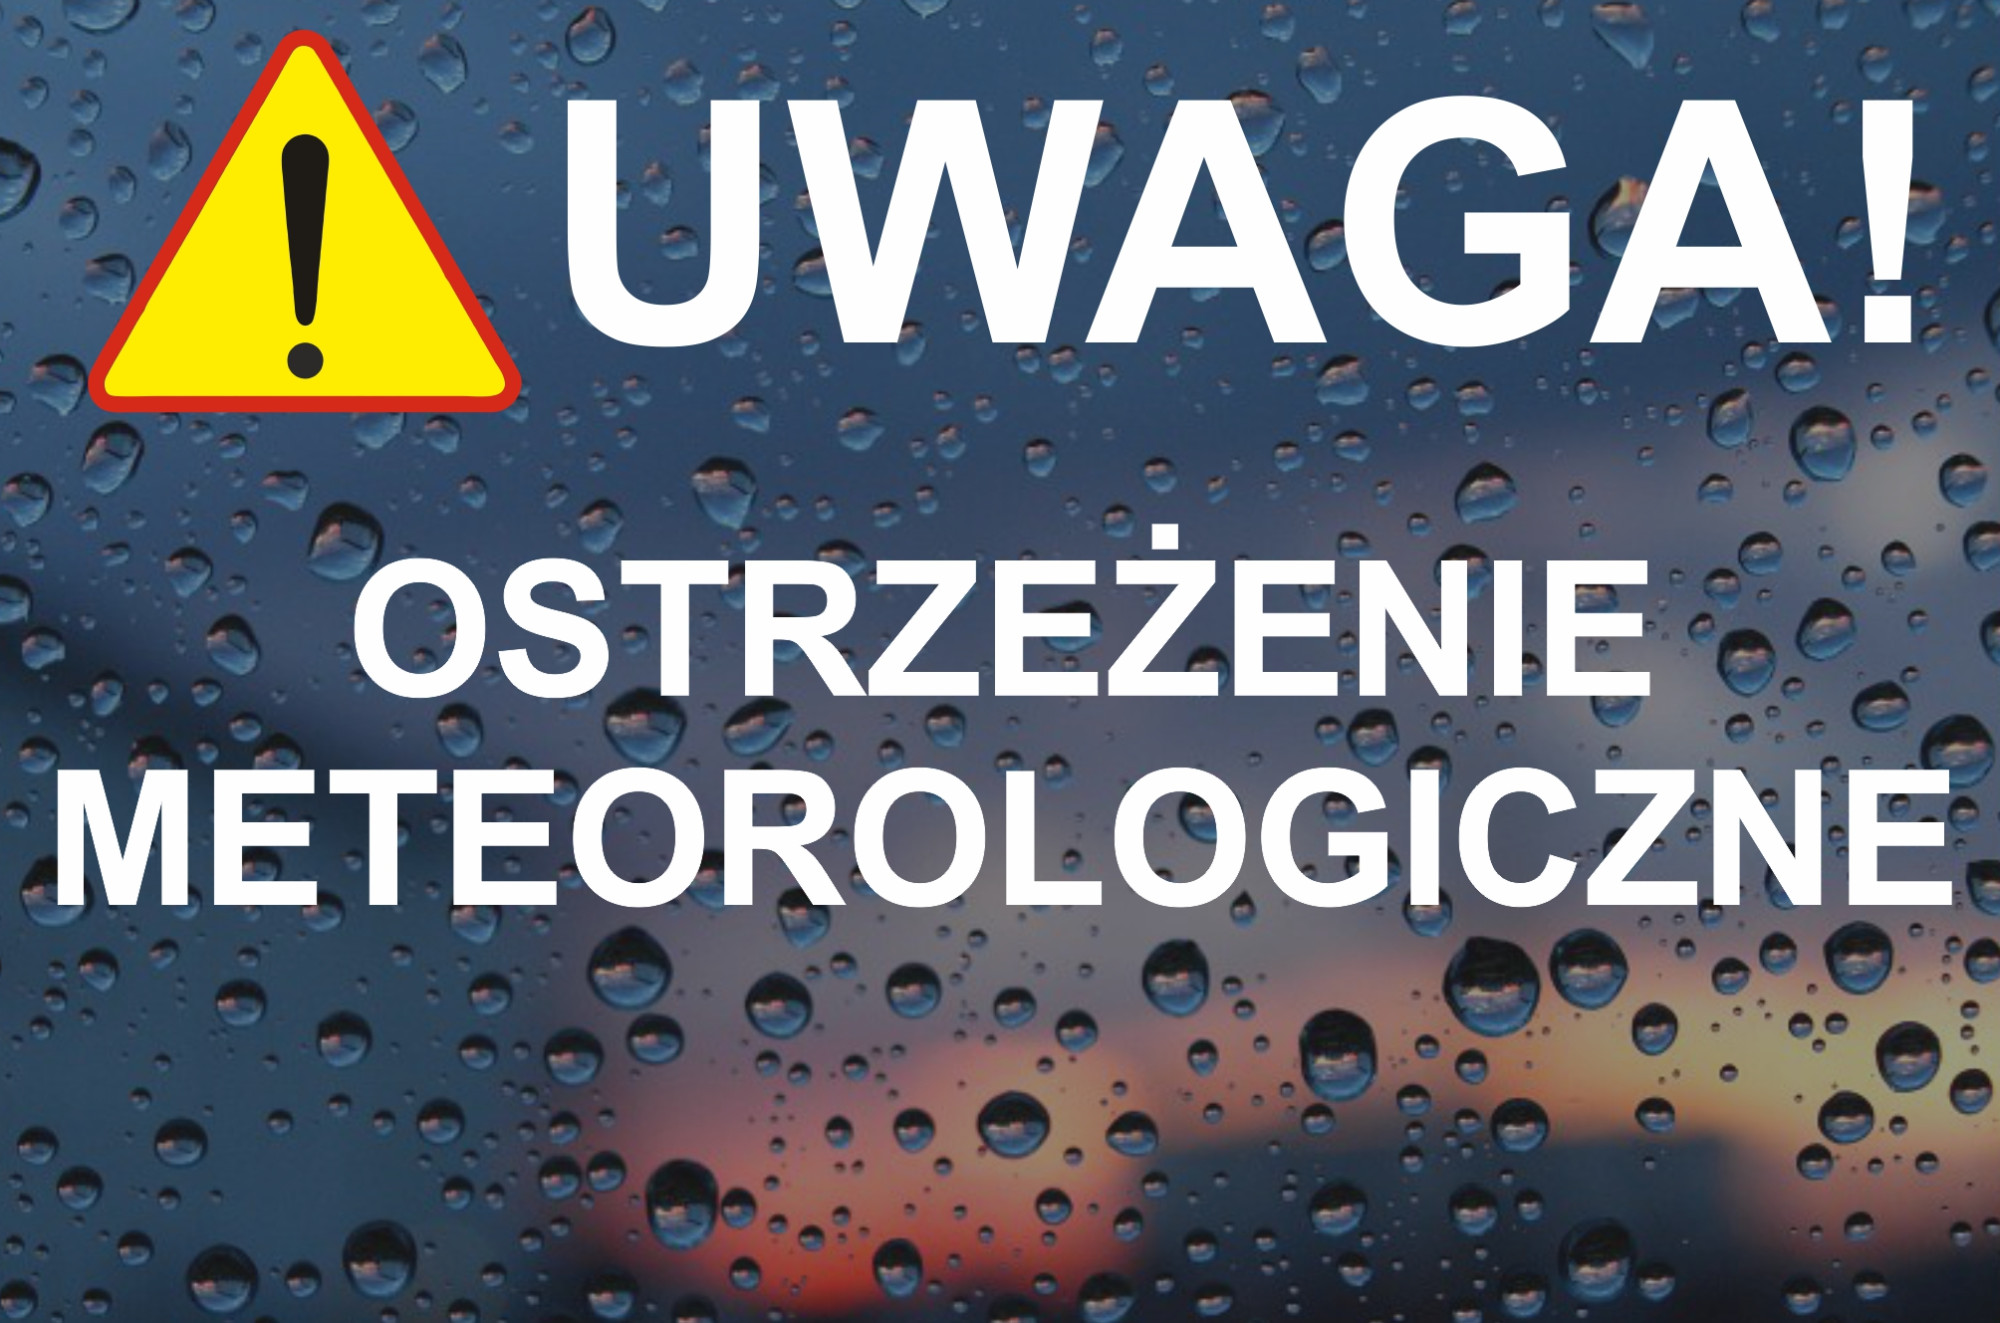 Ostrzenie meteorologiczne na dzień 05.02.2024 r. oraz ostrzeżenie meteorologiczne 24.07.2024 r.